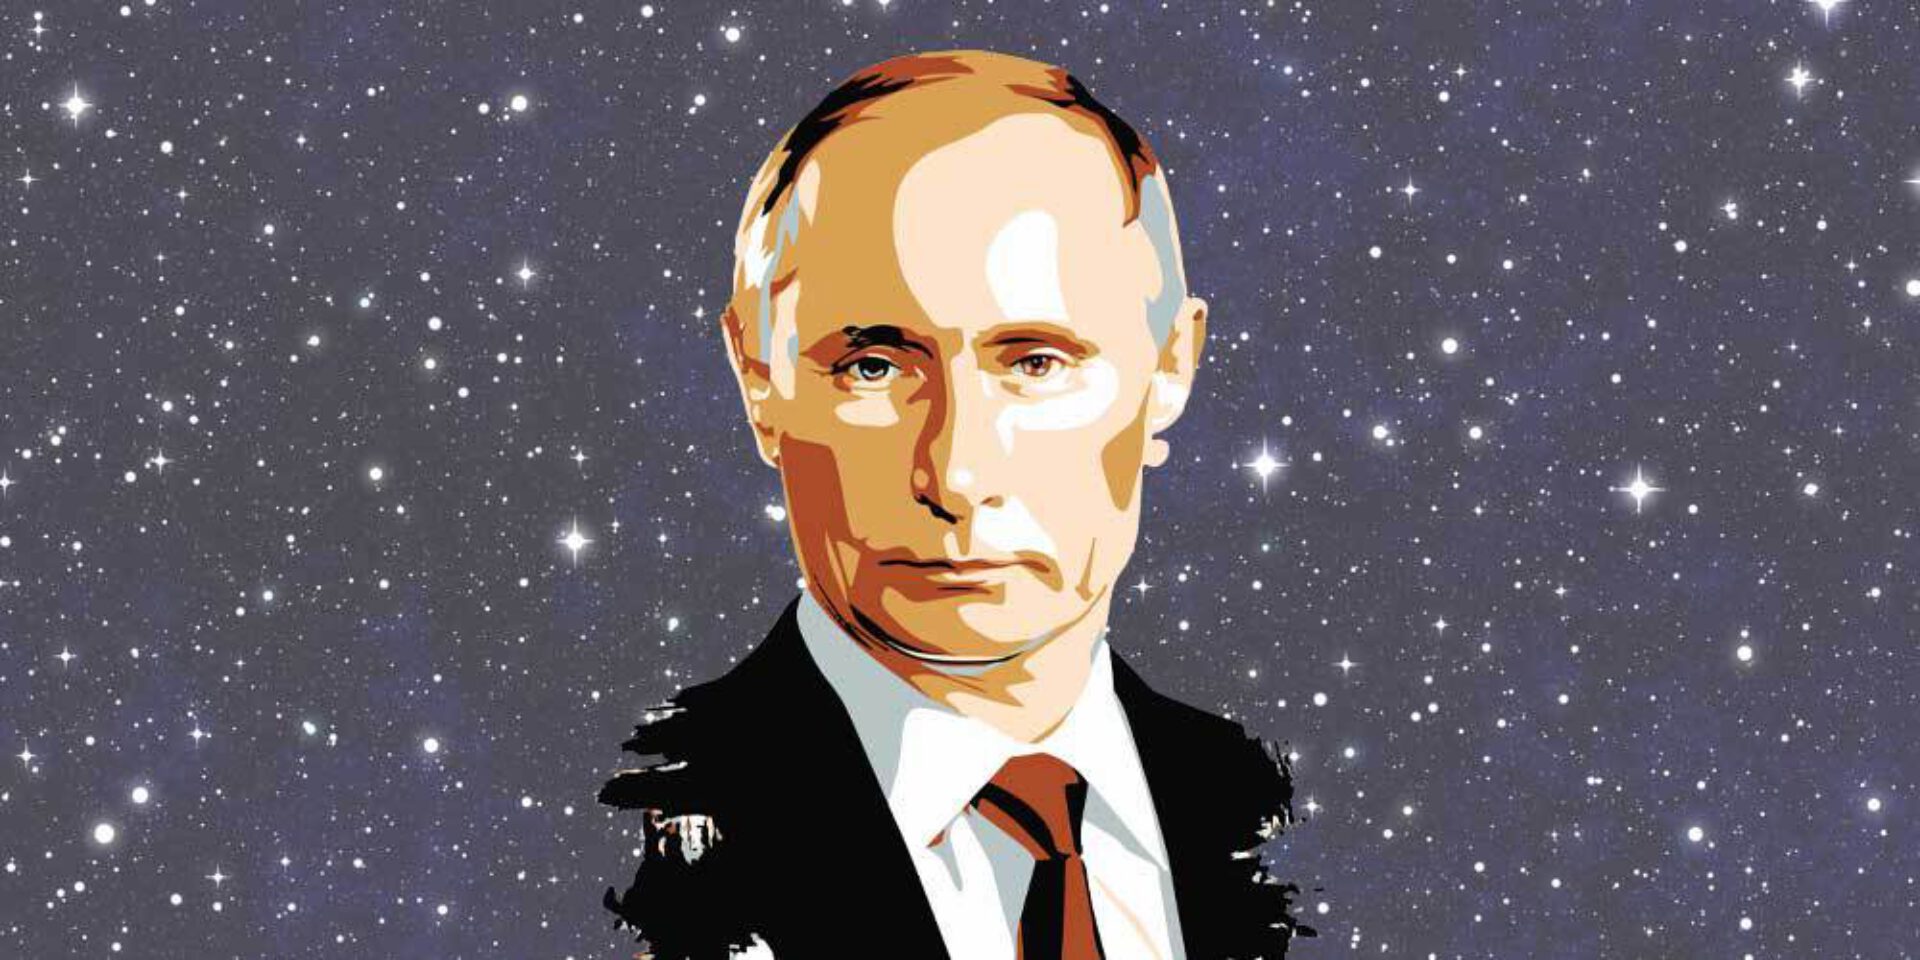 Vladimir Poetin: een berekende strateeg of een ontspoorde dictator?